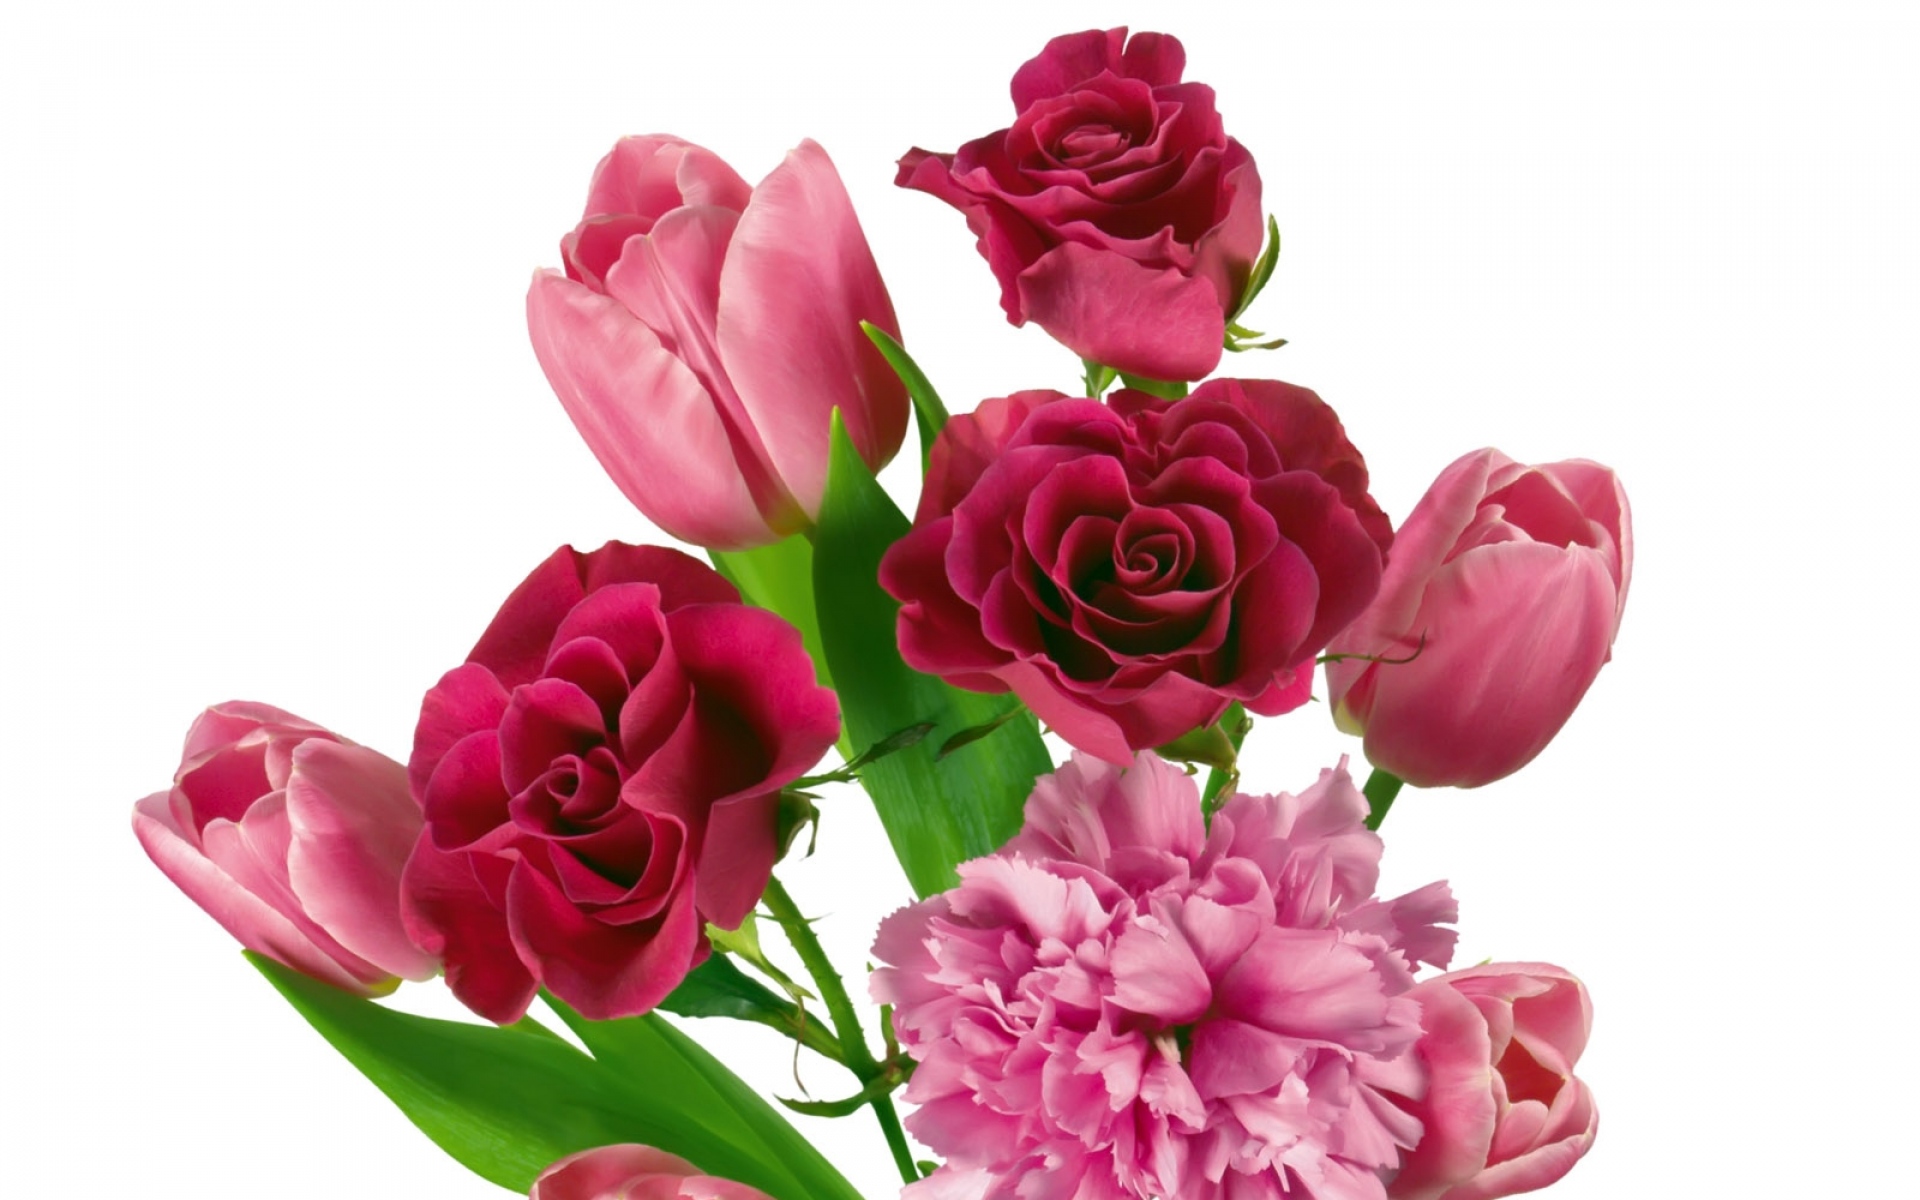 Картинки Розы, тюльпаны, гвоздики, букеты, нежность фото и обои на рабочий стол